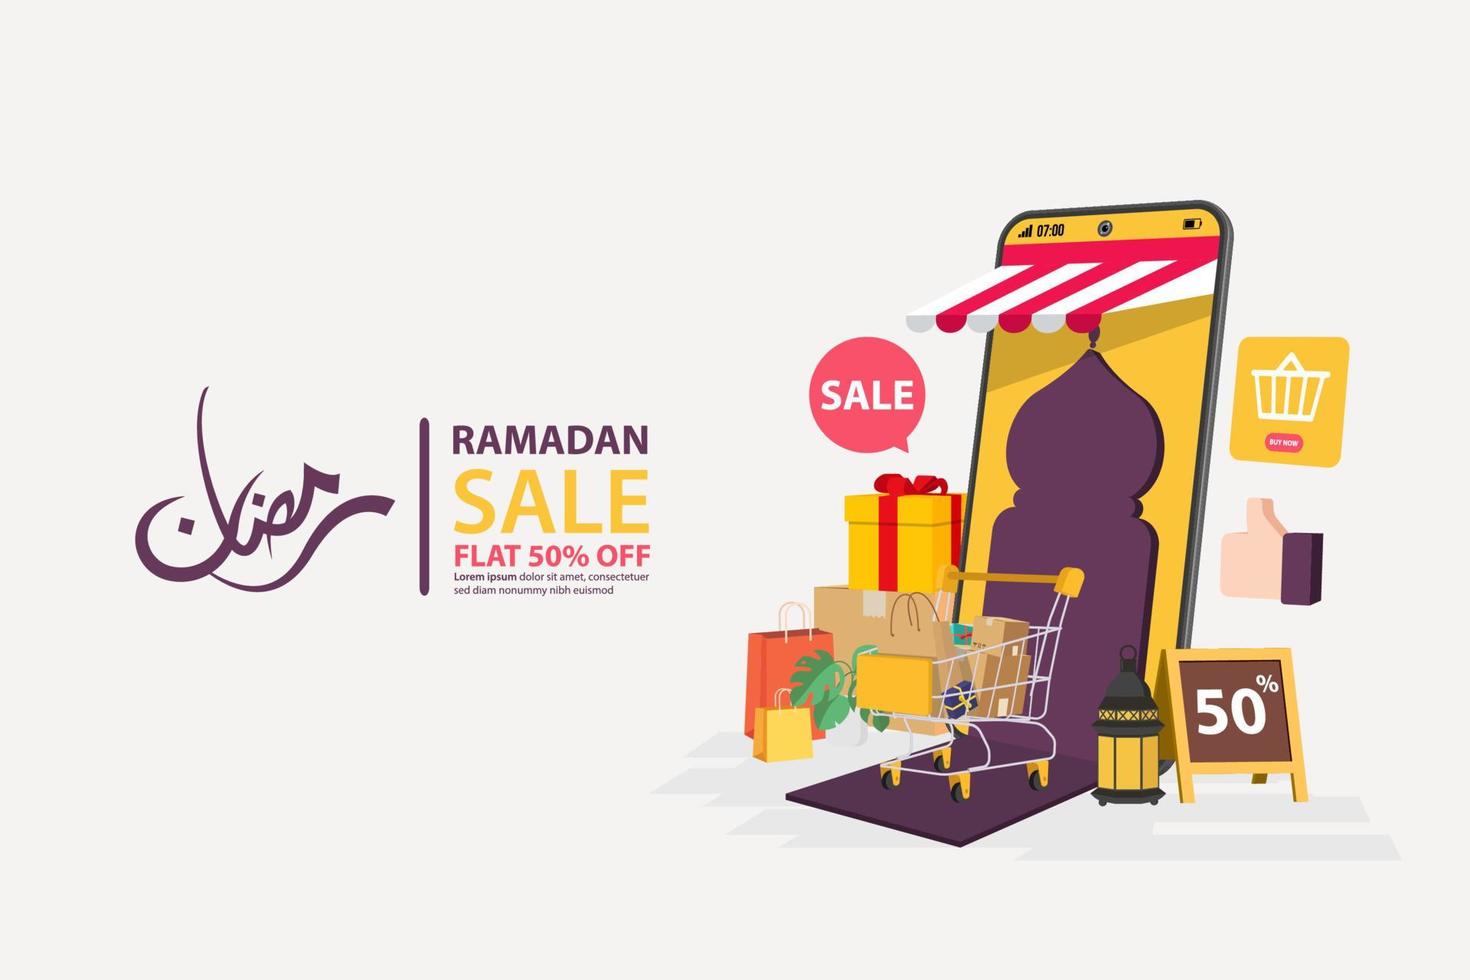 banner di vendita ramadan su dispositivi mobili online, sconto e migliore offerta tag, etichetta o adesivo impostato in occasione di ramadan kareem ed eid mubarak, illustrazione vettoriale